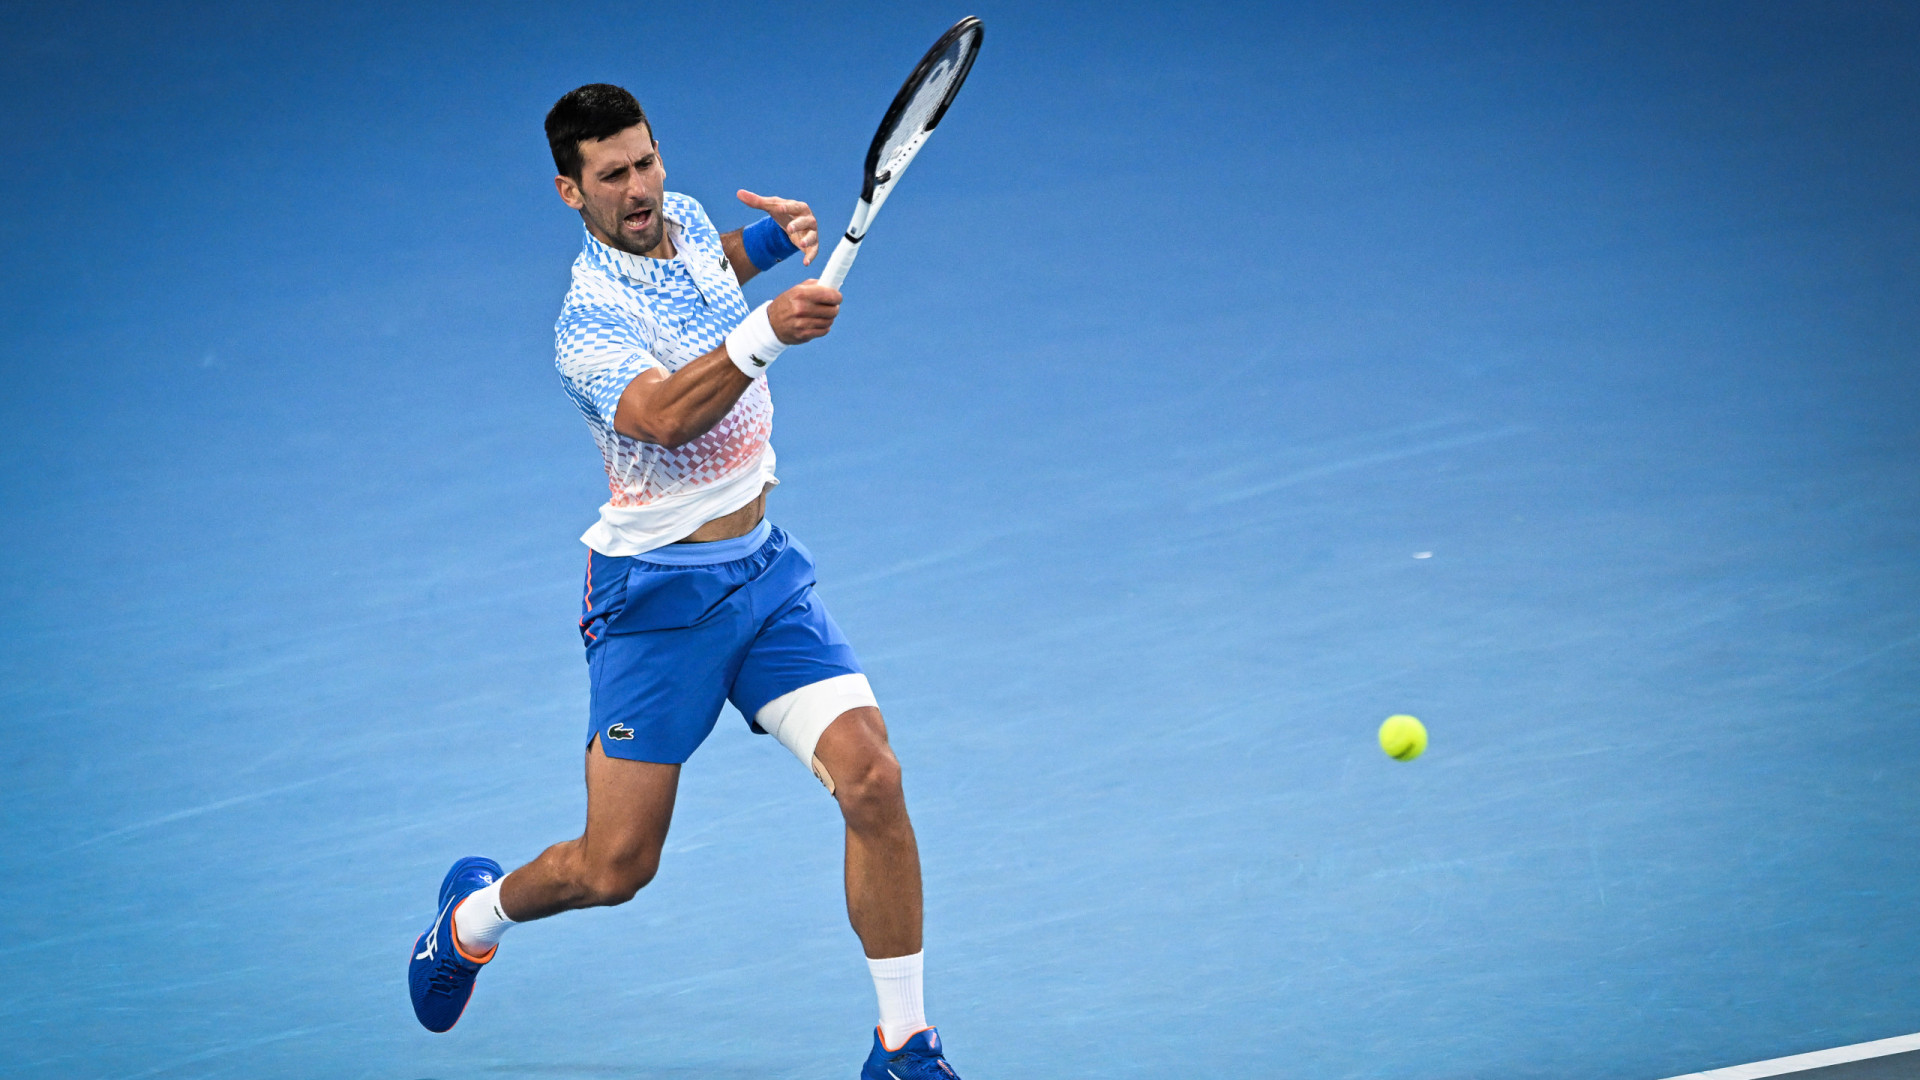 Djokovic encerra sonho de qualifier e vai às quartas de final no US Open